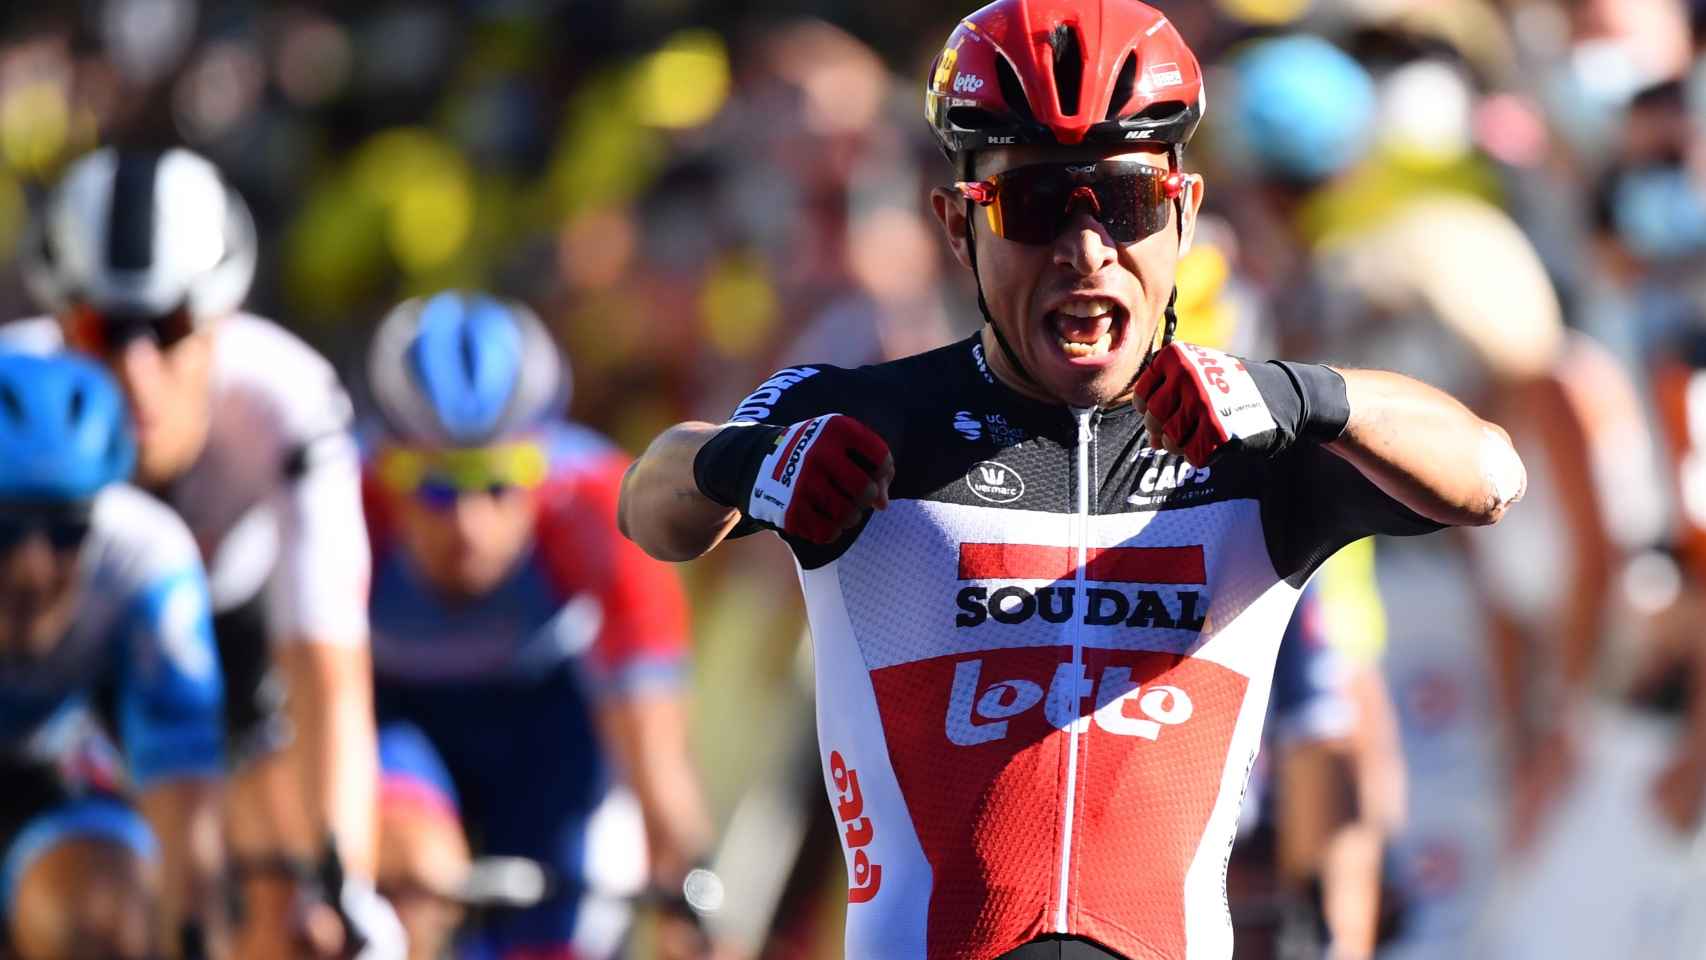 Caleb Ewan se impone en la tercera etapa del Tour de Francia